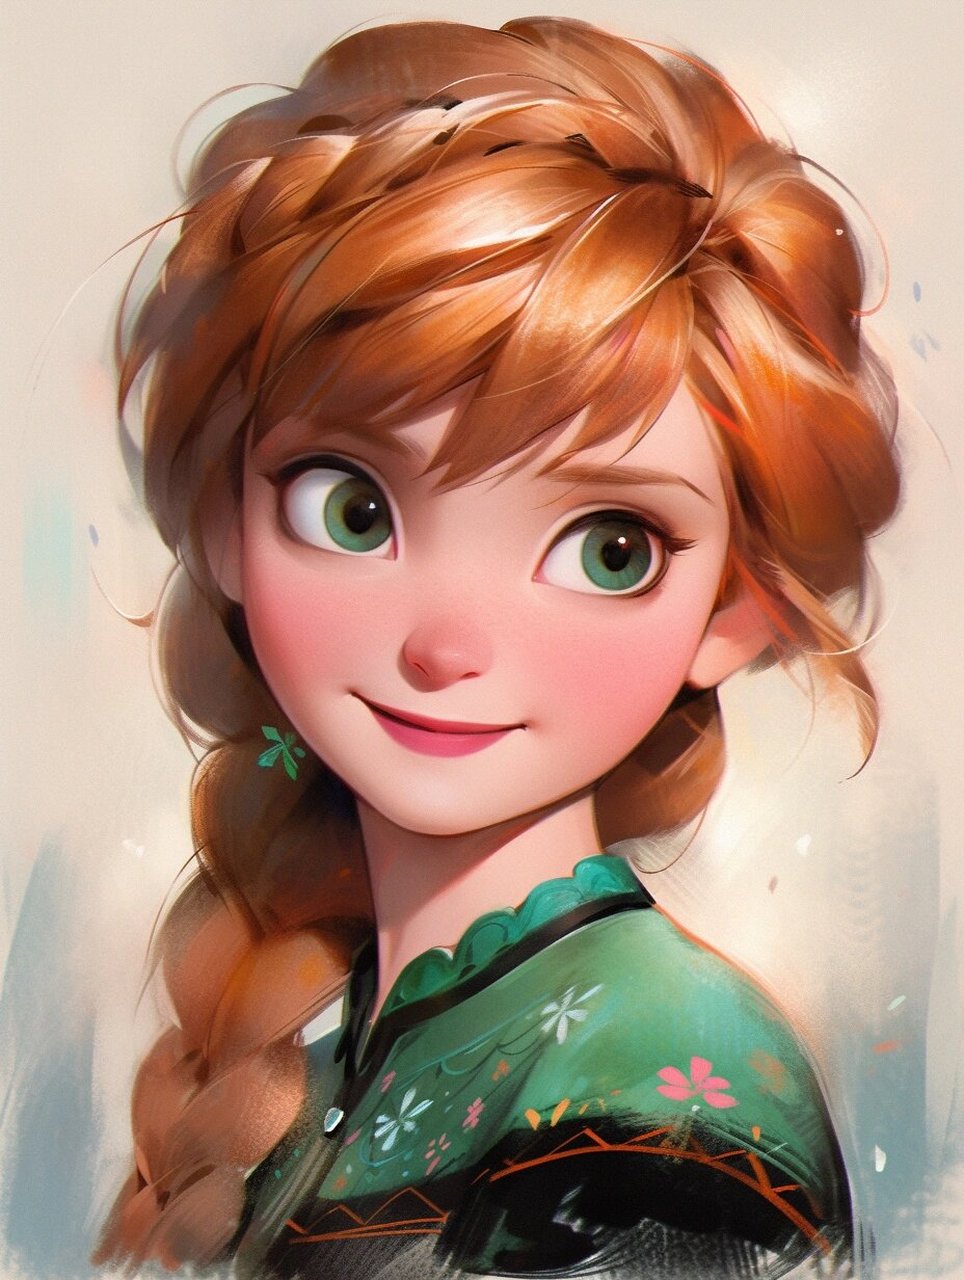 迪士尼公主头像系列 7615 冰雪奇缘之安娜公主 她是《冰雪奇缘》